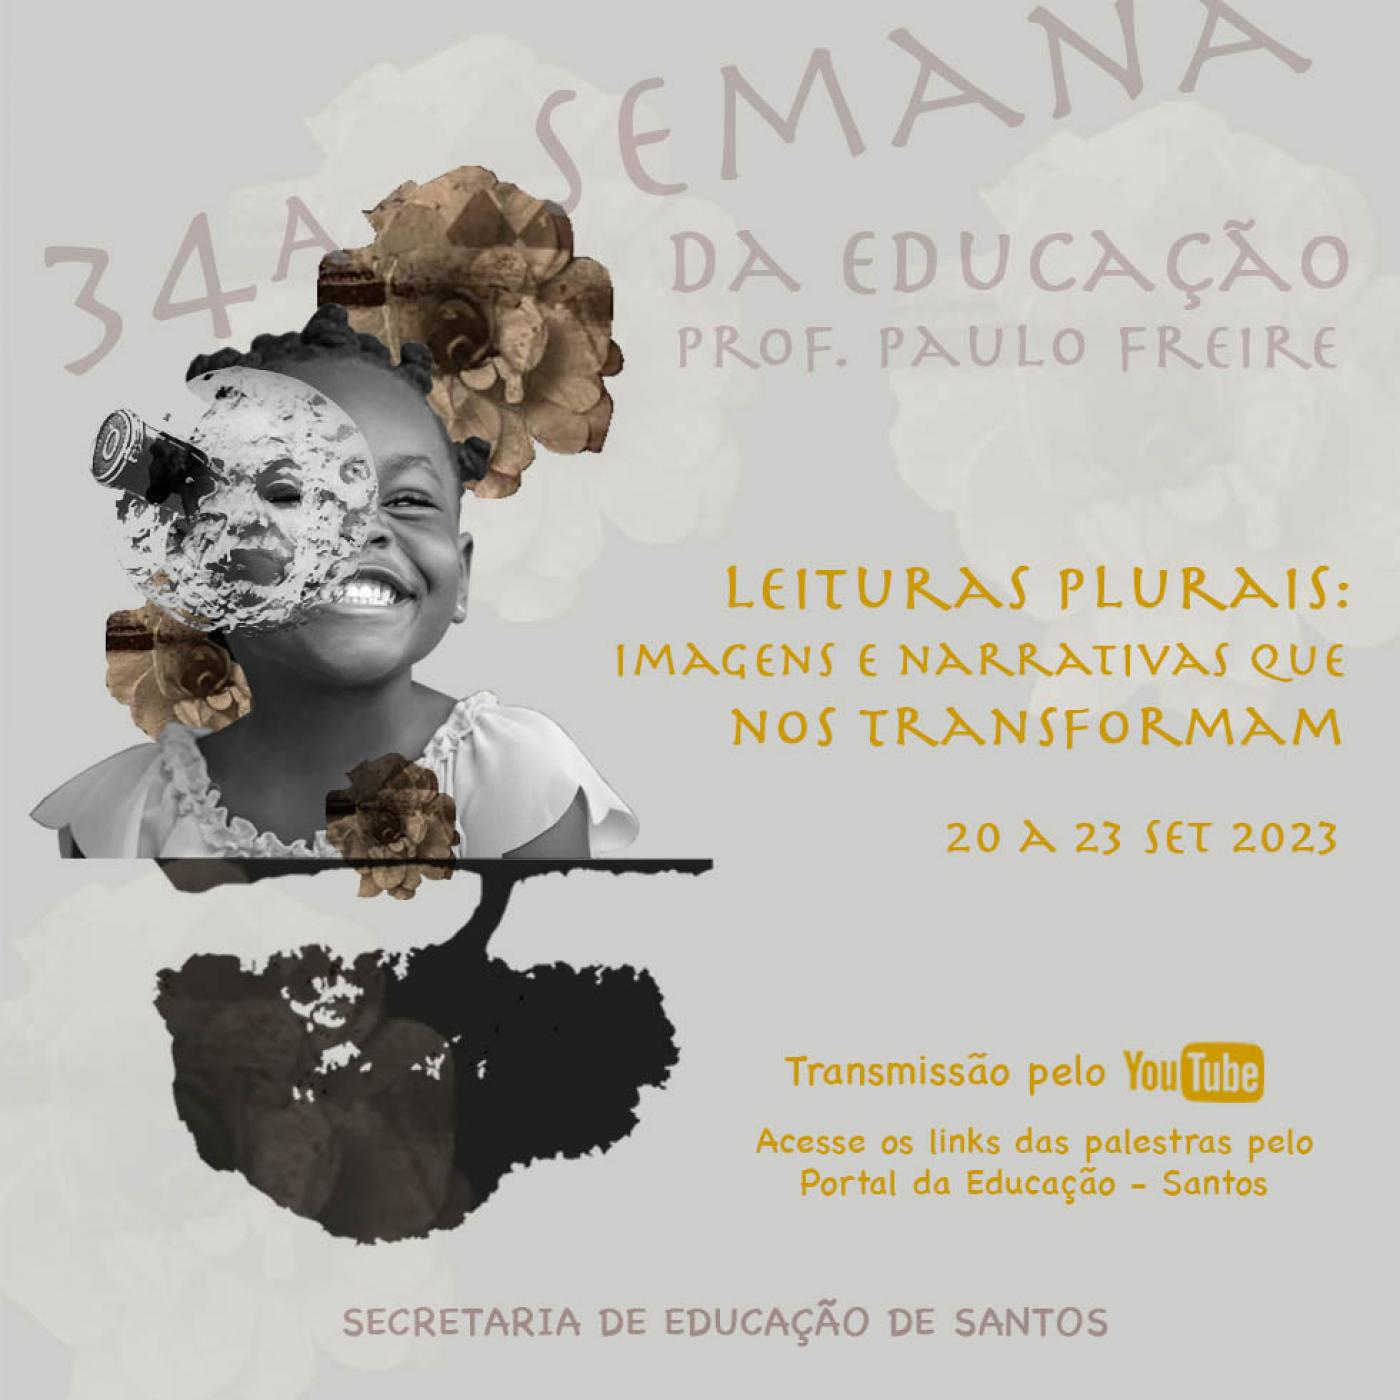 Semana da Educação começa quarta em Santos | Jornal da Orla